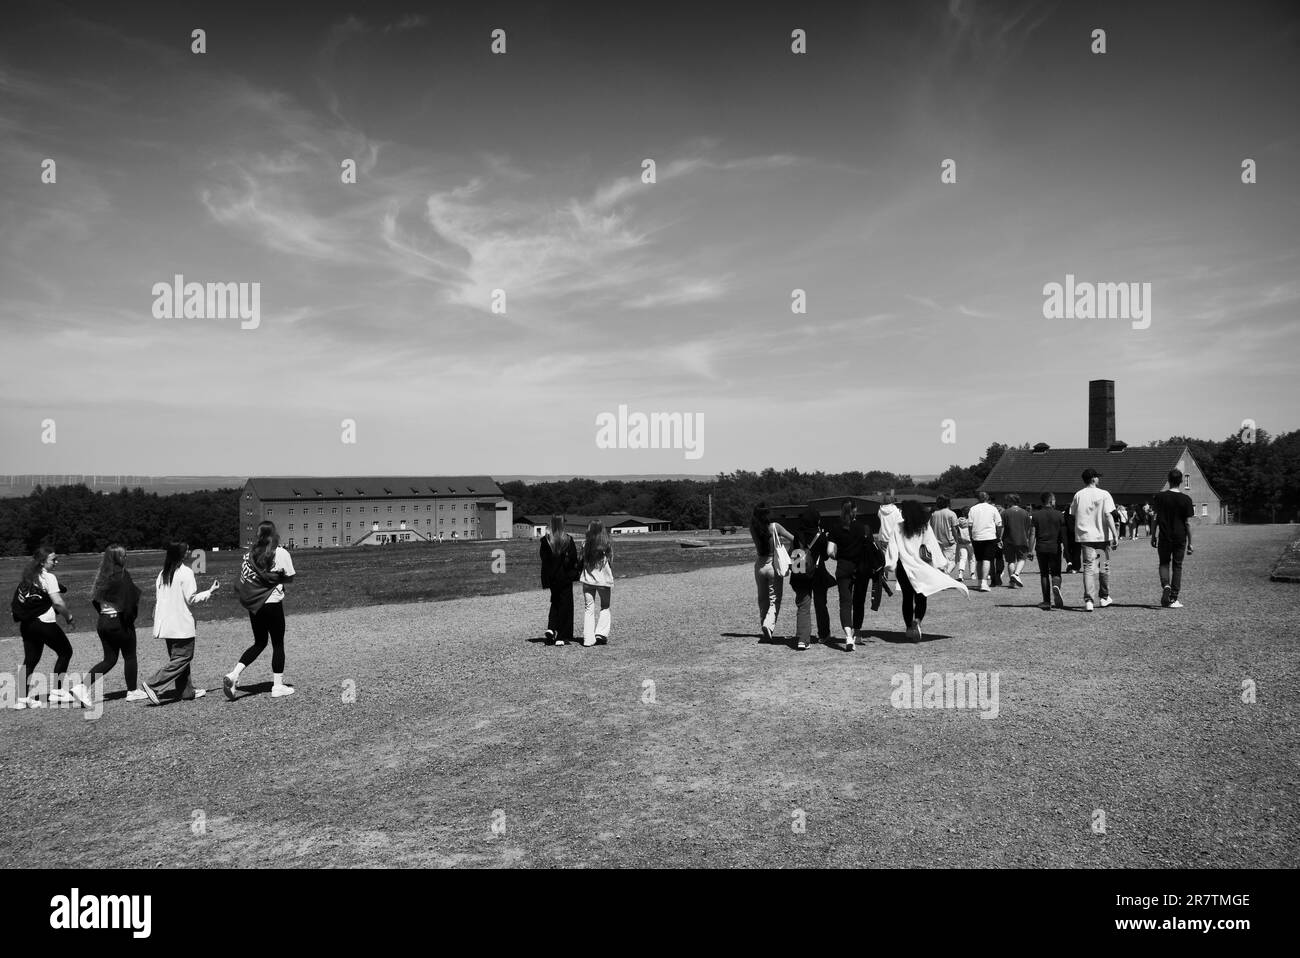 Groupes scolaires, visiteurs, ancien camp de concentration forêt de hêtres, aujourd'hui mémorial, noir et blanc, Weimar, Thuringe, Allemagne Banque D'Images